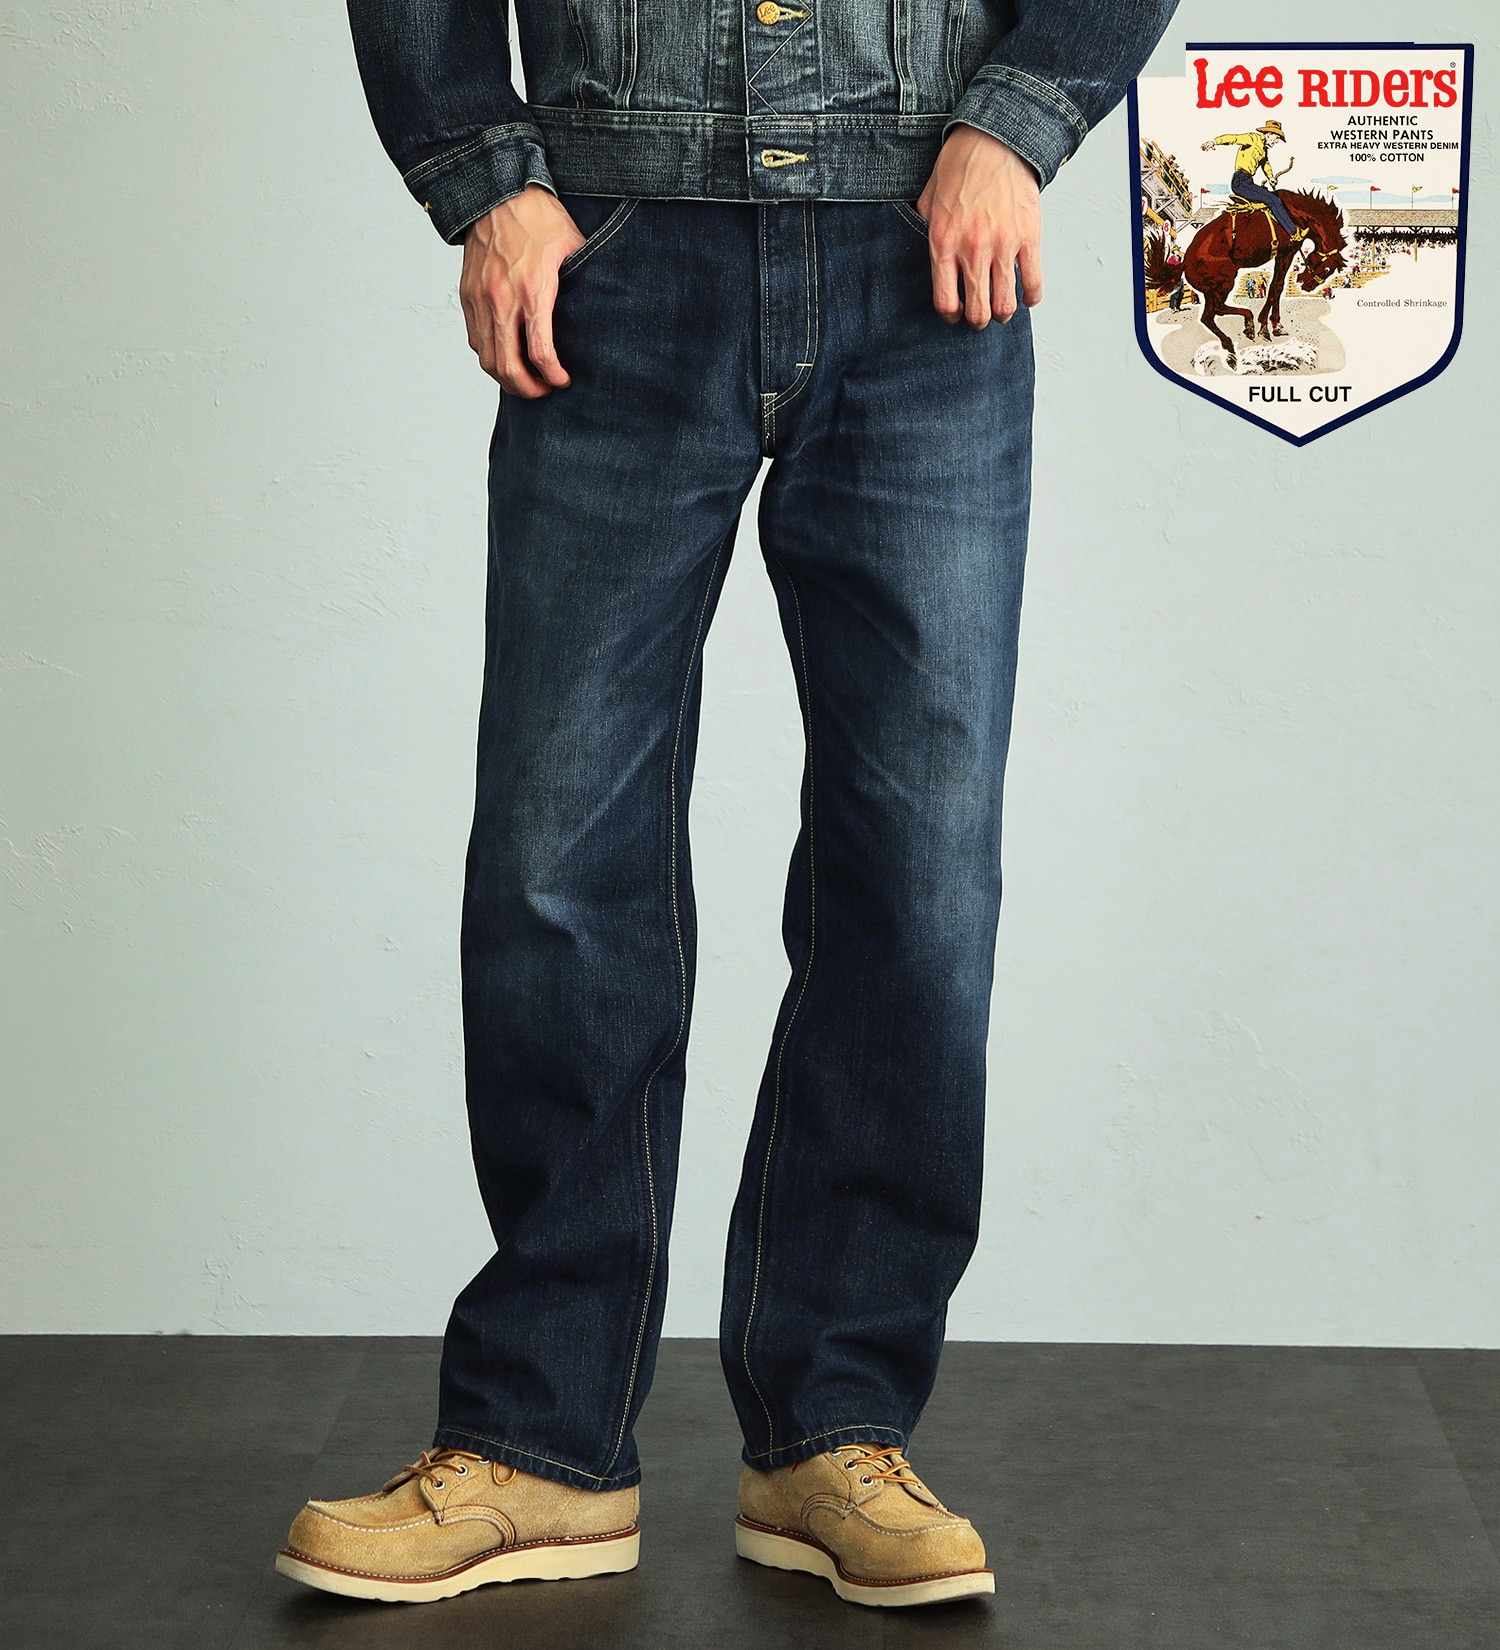 Lee(リー)の【股下長め(83cm)】AMERICAN RIDERS 200 フルカットジーンズ|パンツ/デニムパンツ/メンズ|濃色ブルー